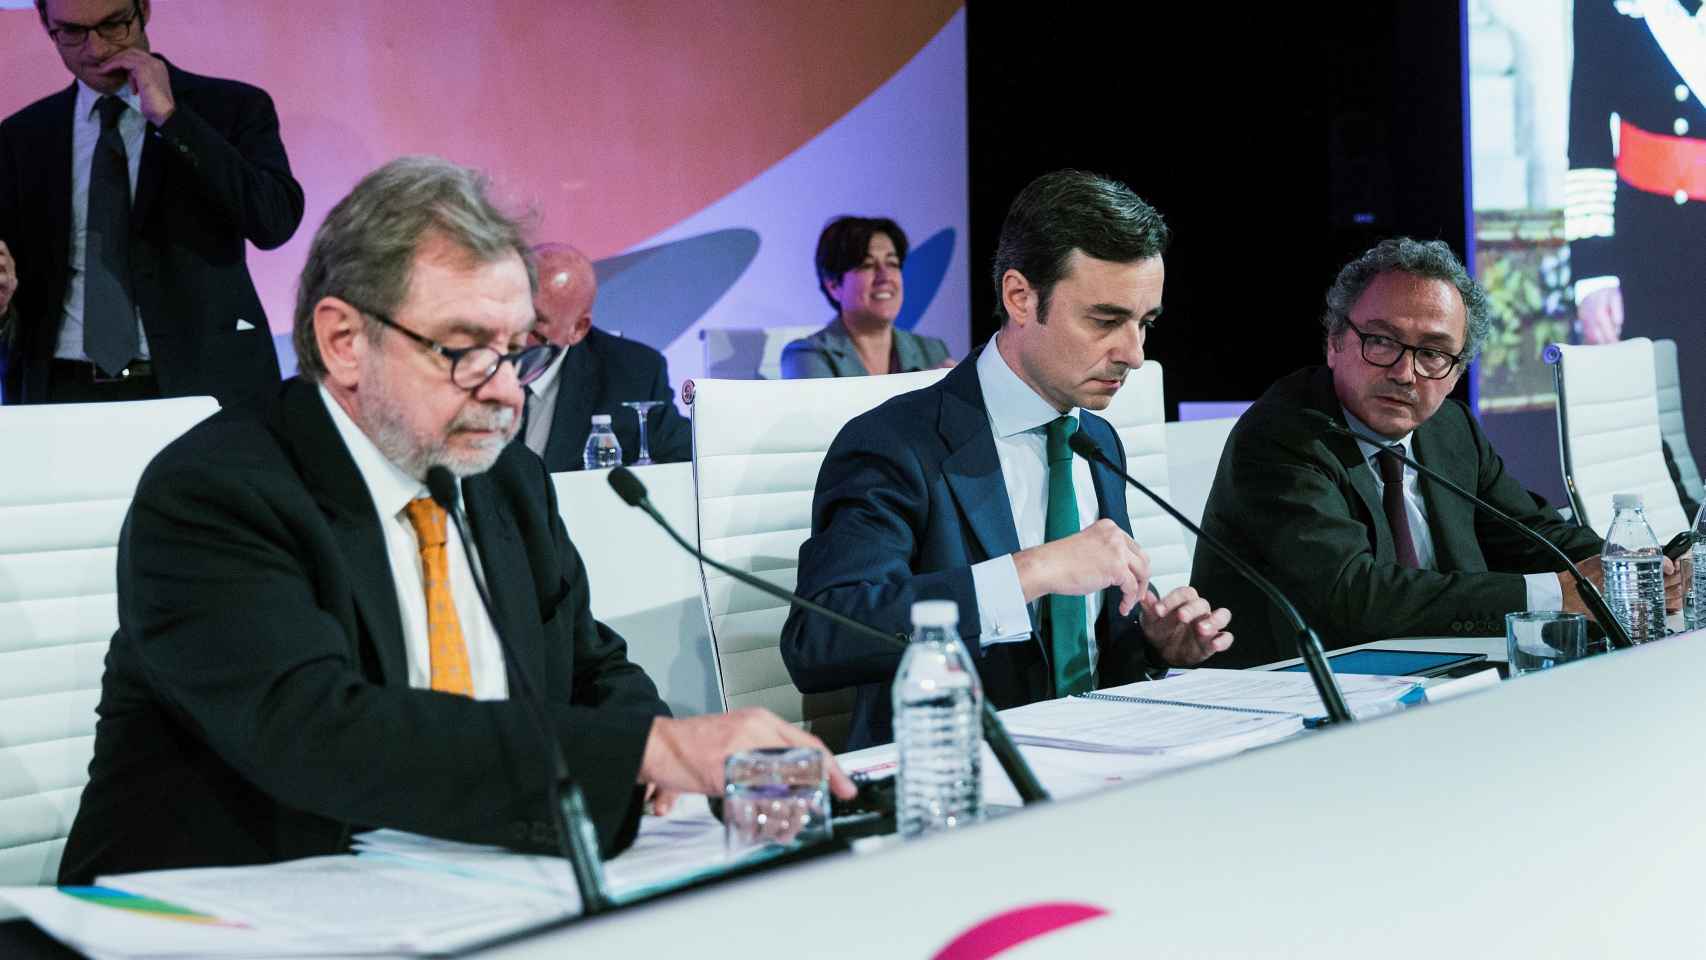 Junta general extraordinaria de accionistas de Prisa realizada en noviembre con Cebrián todavía como Presidente Ejecutivo.